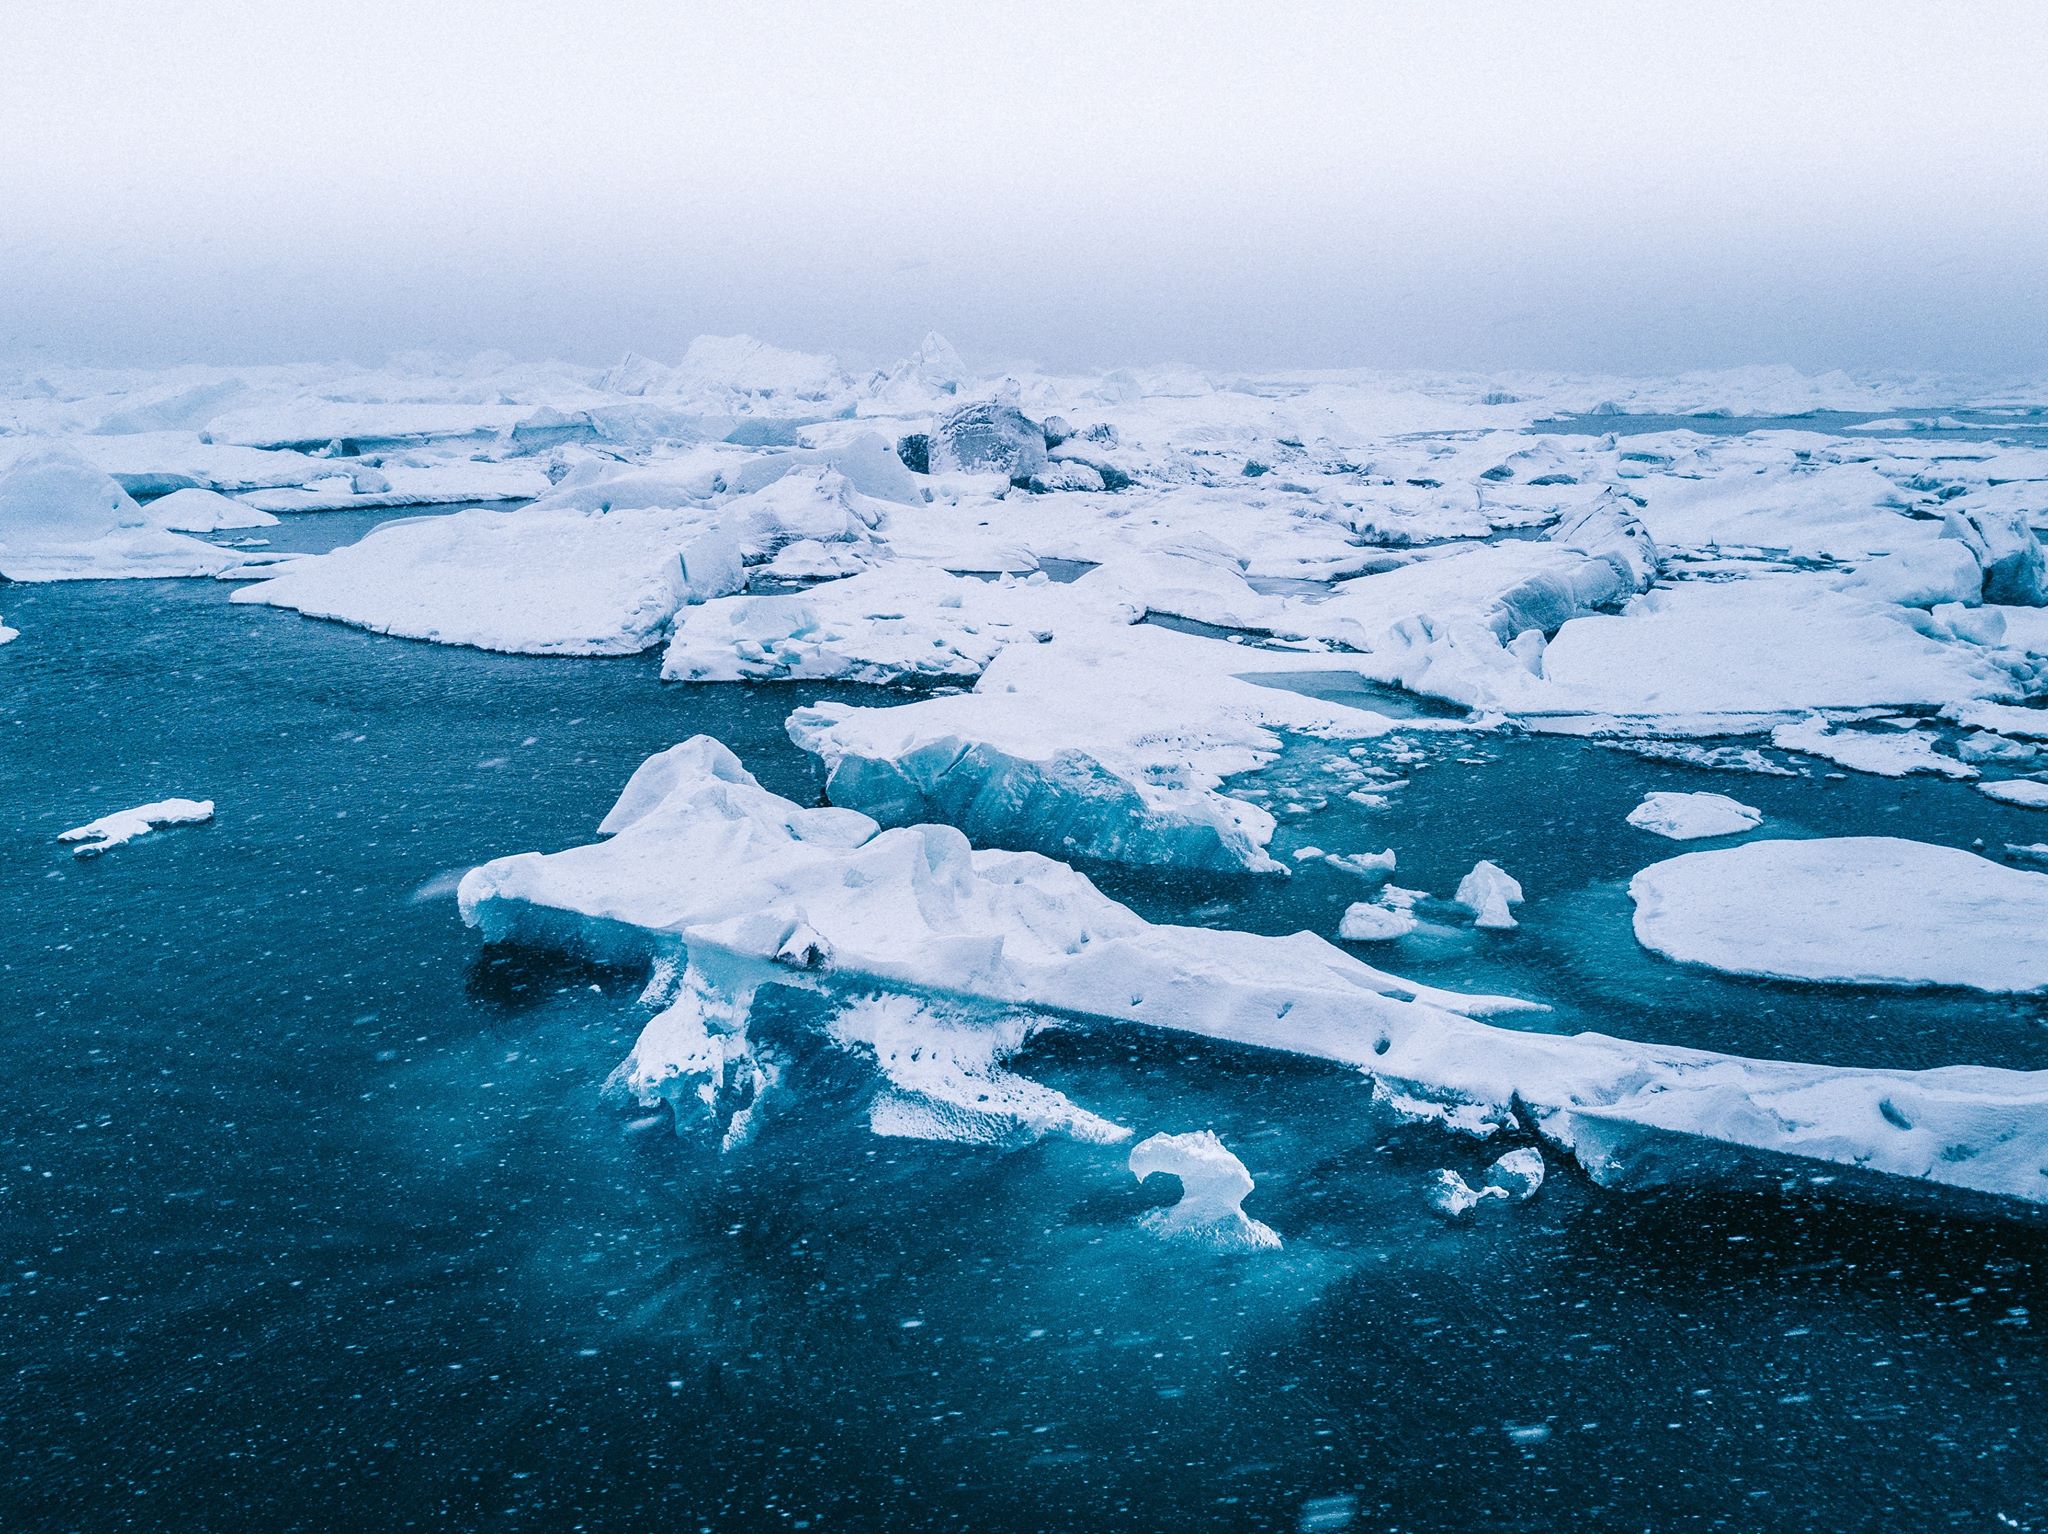 Rác thải nhựa siêu vi đã được tìm thấy tại Bắc Cực, Trái Đất chính thức bị rác “xâm chiếm”